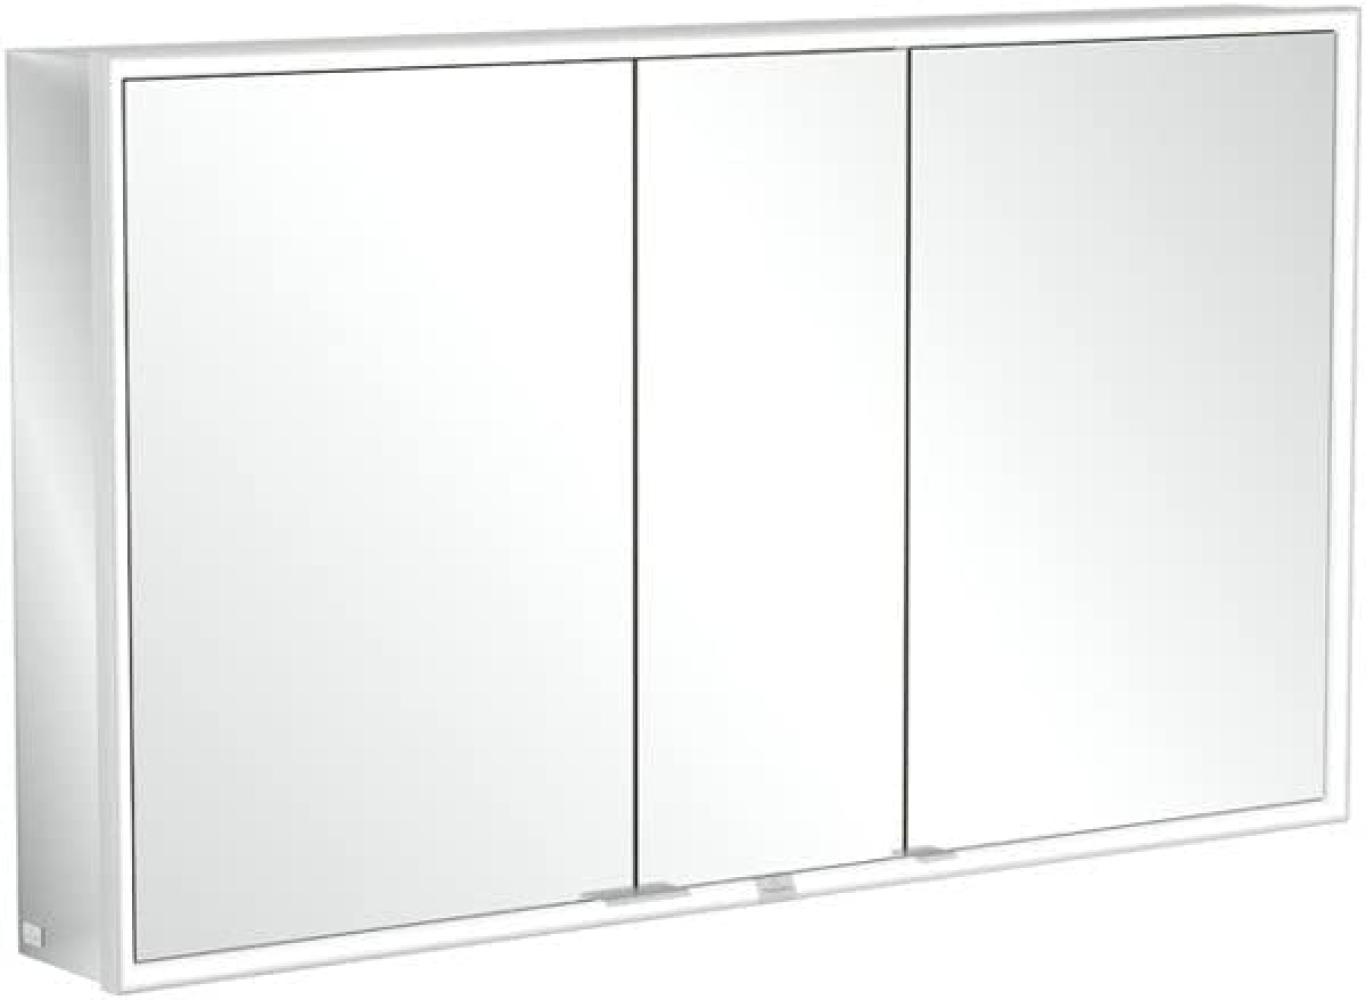 Villeroy & Boch My View Now, Spiegelschrank für Aufputz mit Beleuchtung, 1300x750x168 mm, mit Ein-/Ausschalter, Smart Home fähig, 3 Türen, A45713 - A4571300 Bild 1